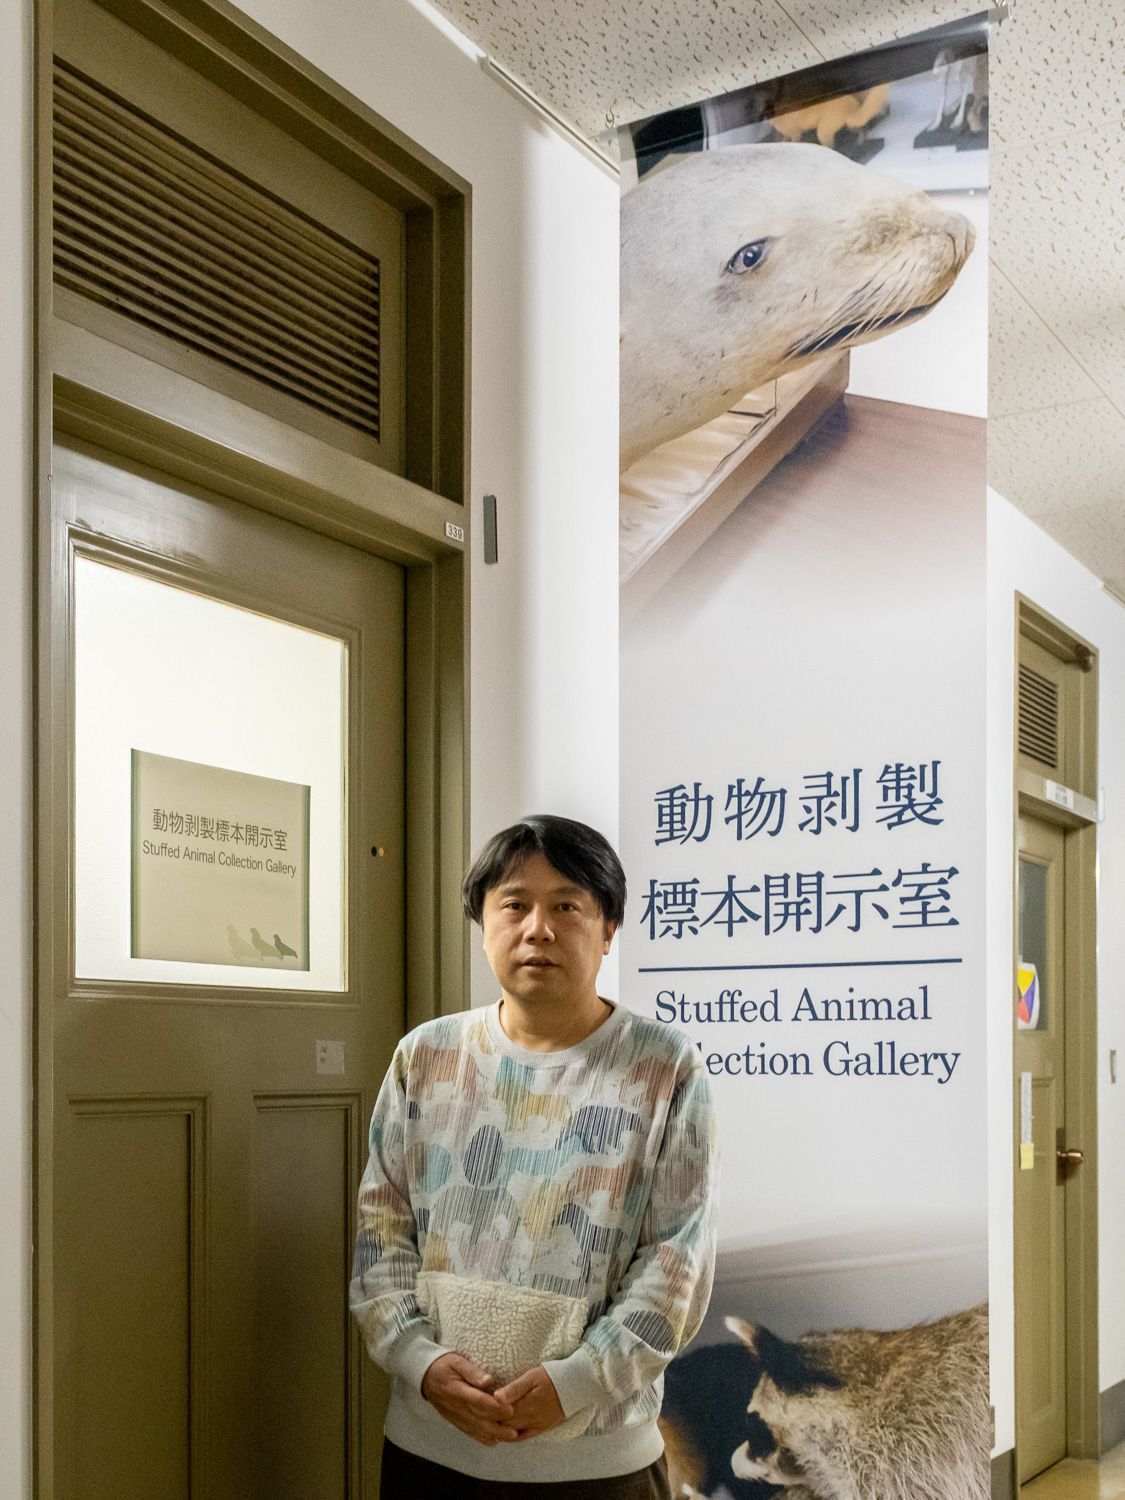 ماروياما مونيتوشي خارج معرض الحيوانات المحنطة بمتحف جامعة كيوشو. توجد لافتة معلقة في الخارج تظهر أسد البحر الياباني المحتفظ به. (© هاياشي ميتشيكو)